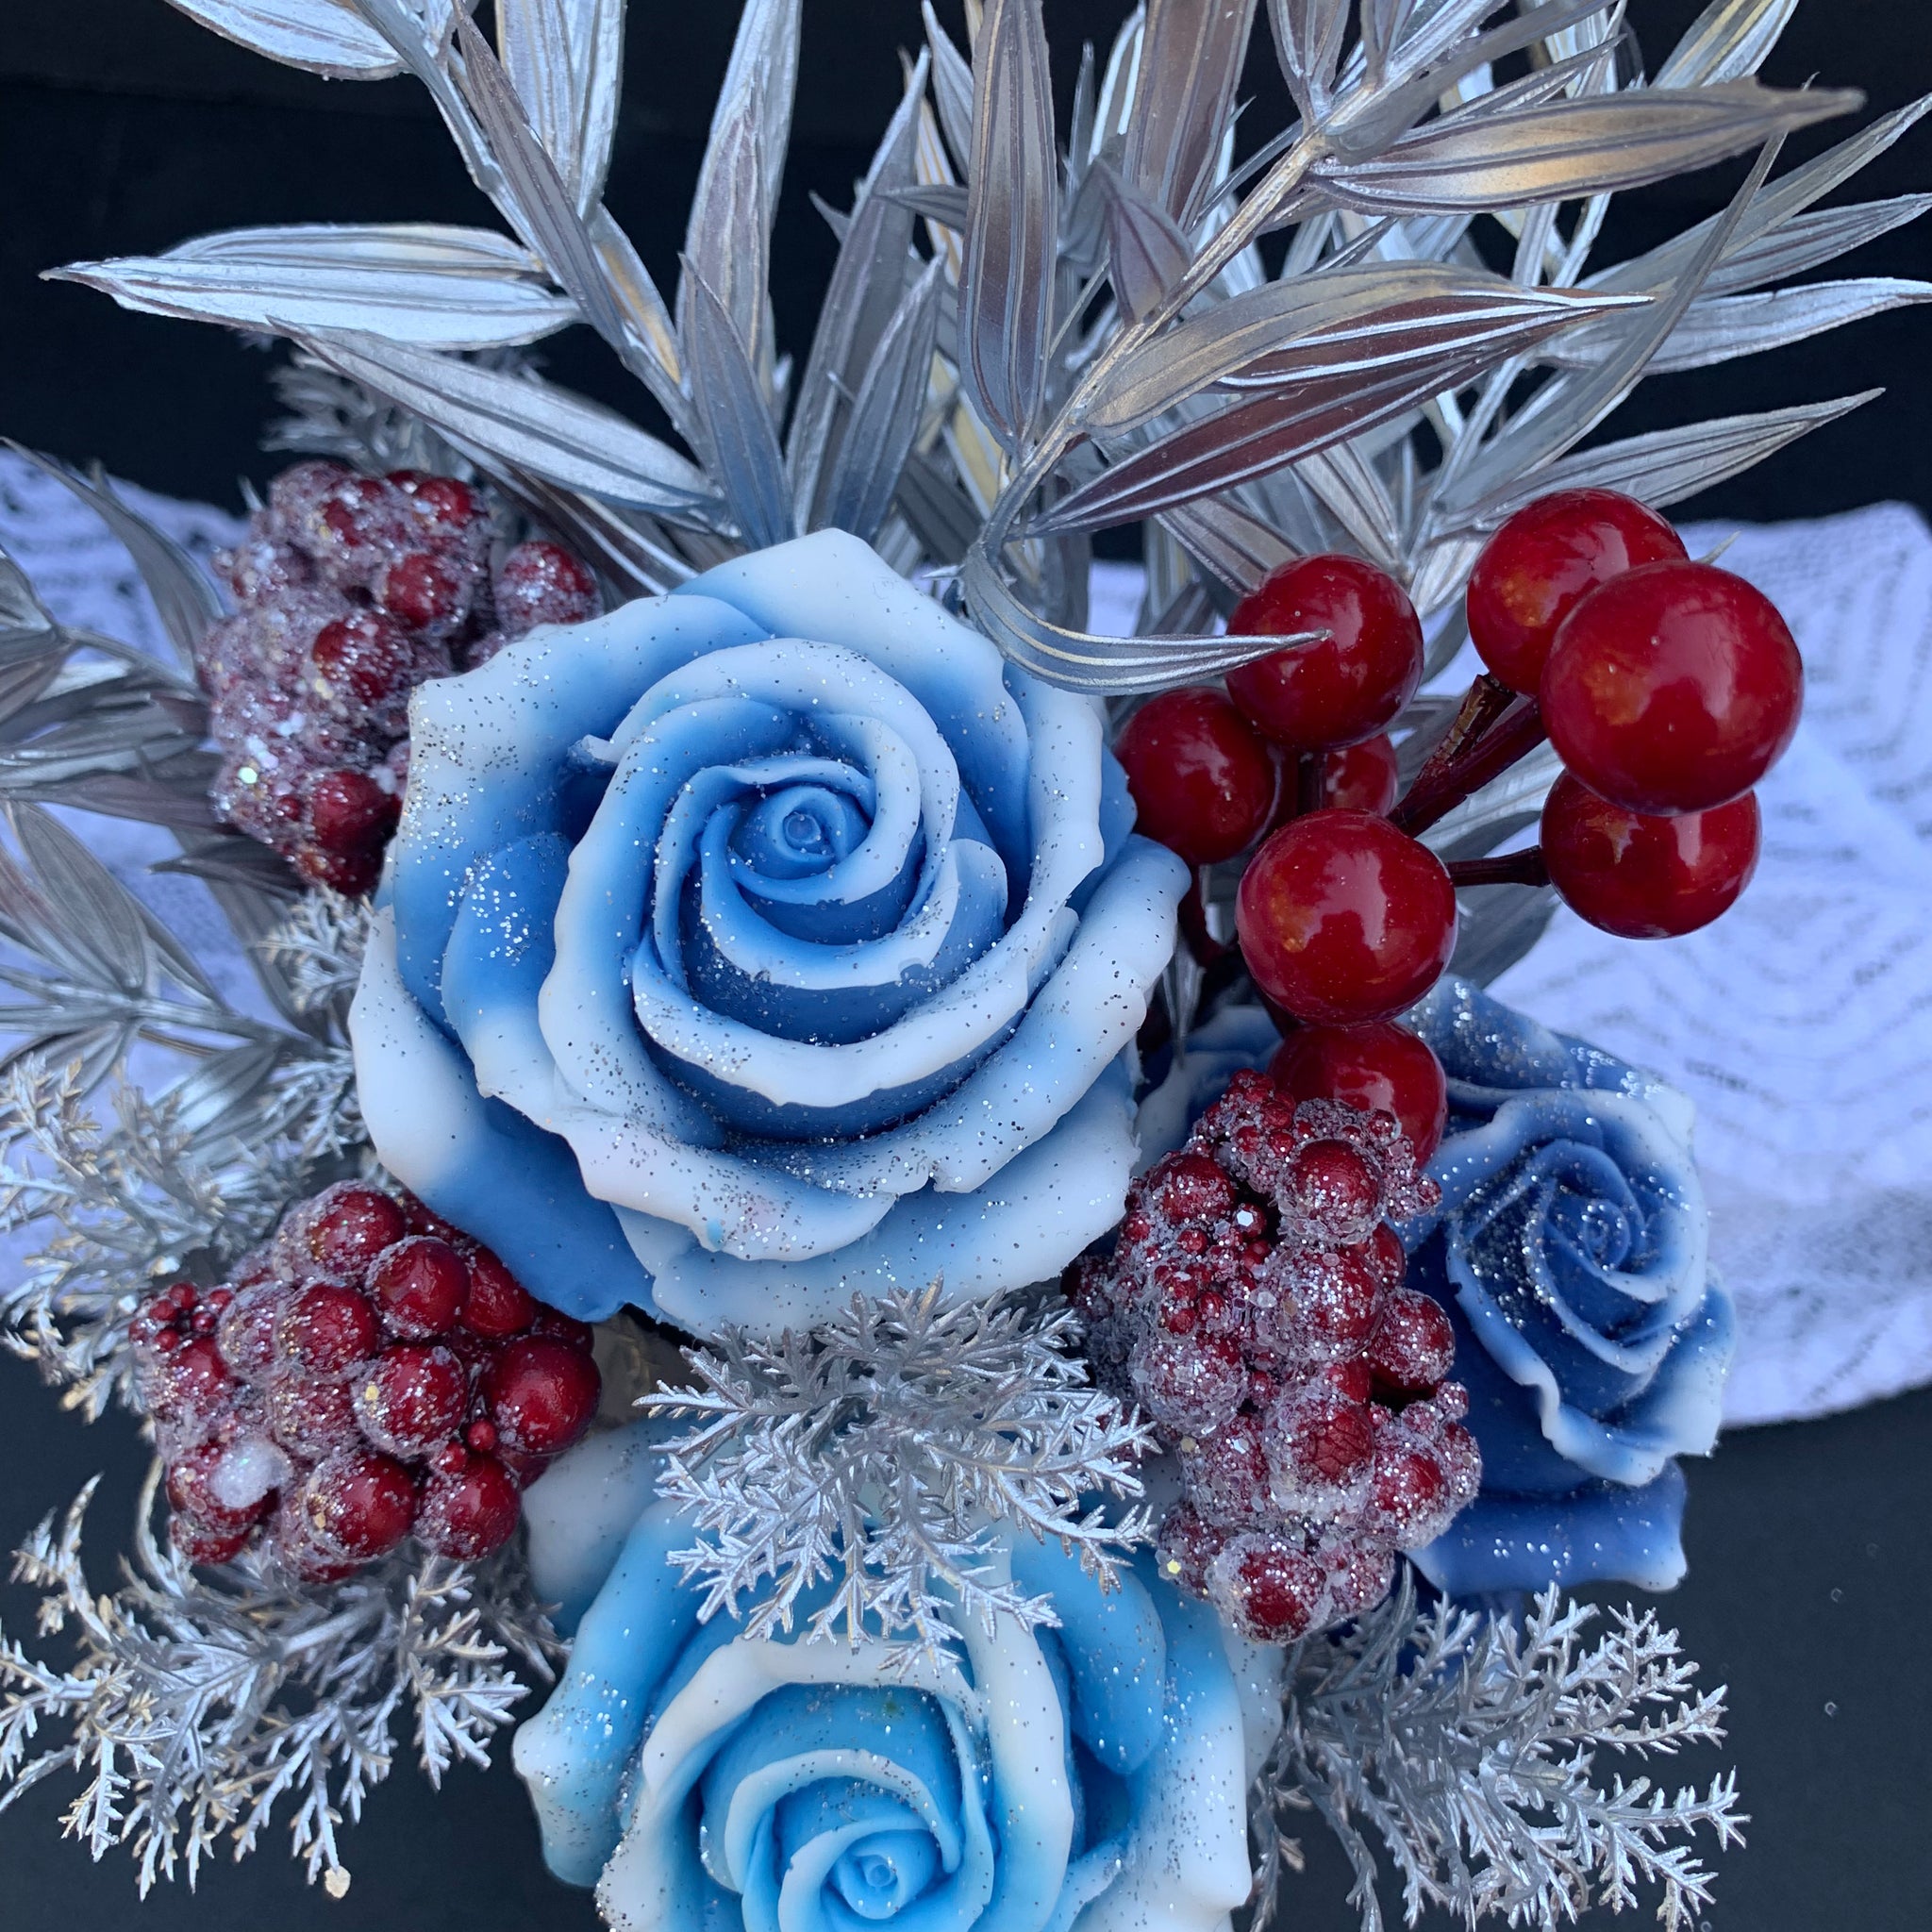 Blue Christmas magic soap flowers arrangement arr